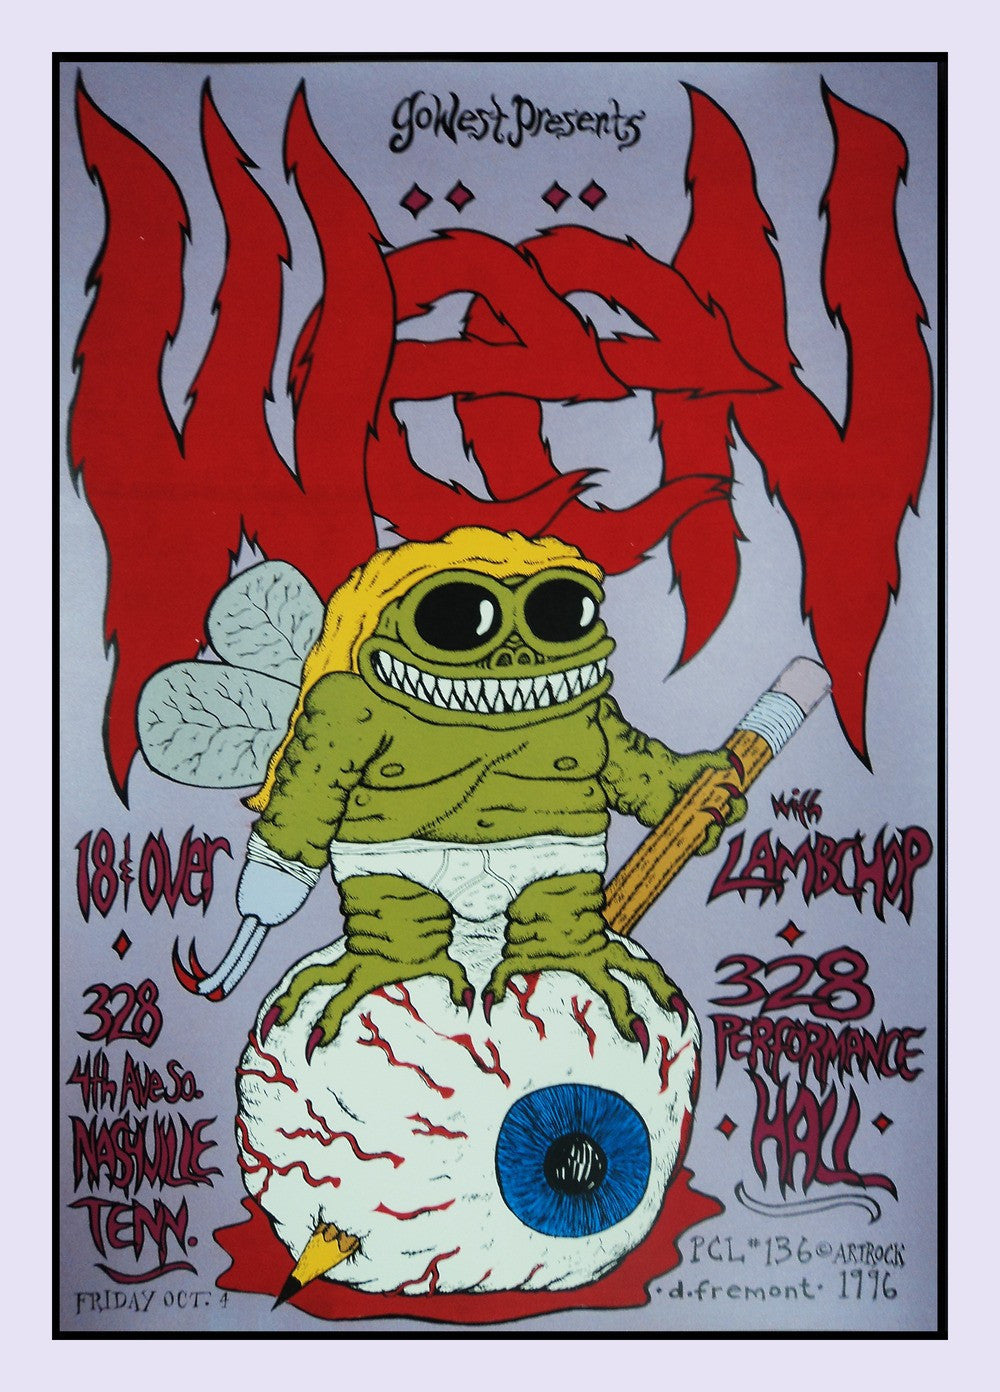 David Fremont - 1996 - Ween Concert Poster